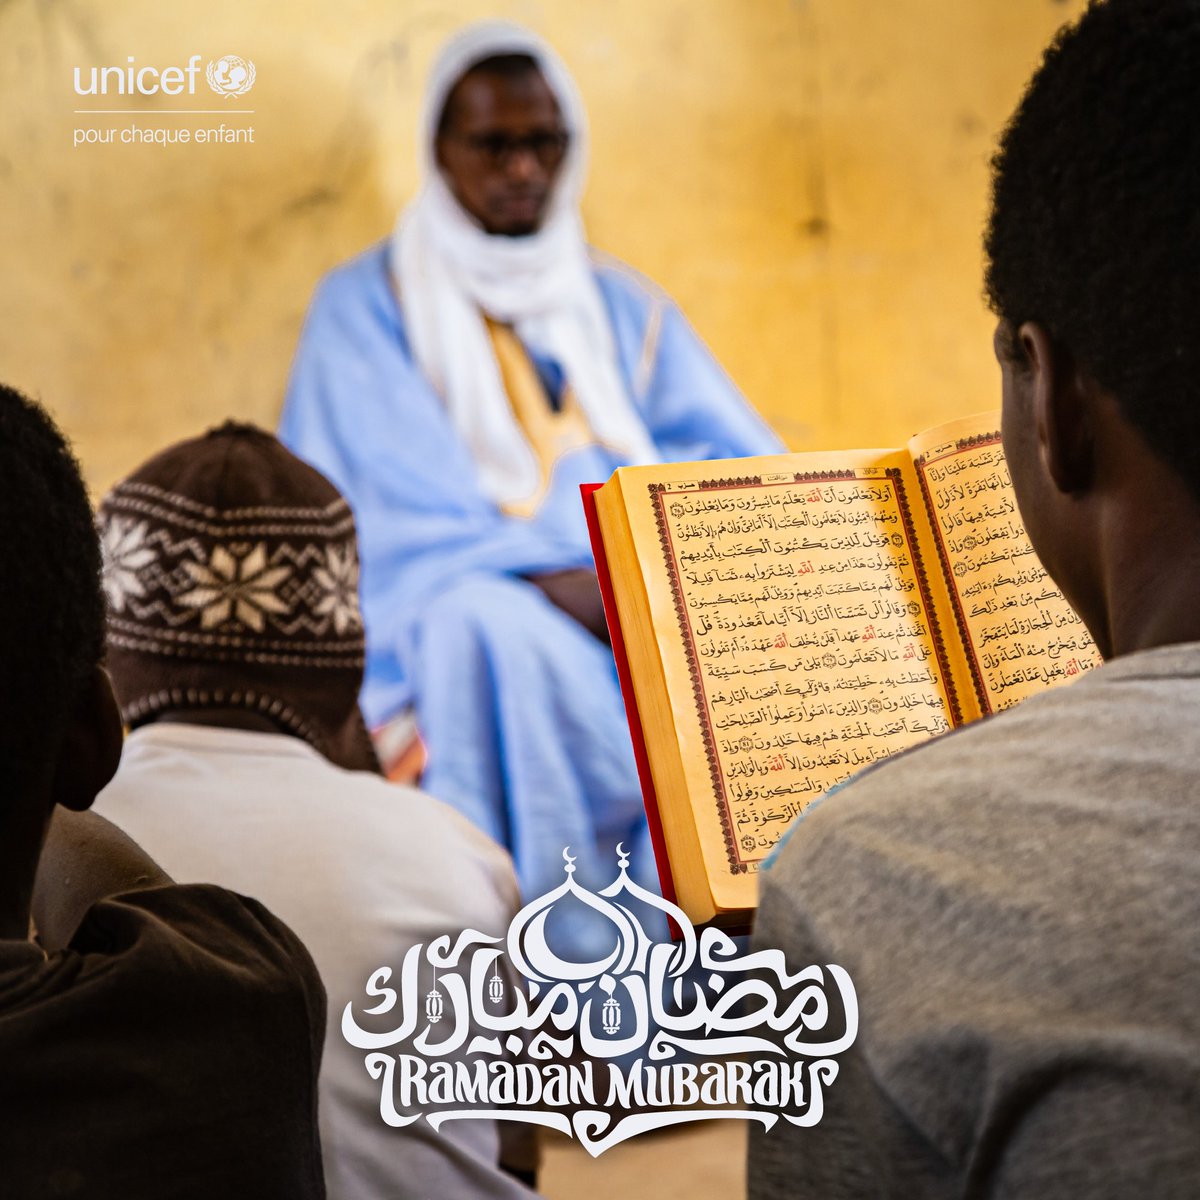 فريق اليونيسف في موريتانيا يتمنى لكم رمضان مبارك. نأمل أن يجلب لكم هذا الشهر السلام والصبر والتسامح. لنتذكر خلال هذا الشهر الفضيل أهمية العطاء والرأفة تجاه الأكثر هشاشة، ونجدد التزامنا المستمر بدعم كل طفل في موريتانيا. 🌙